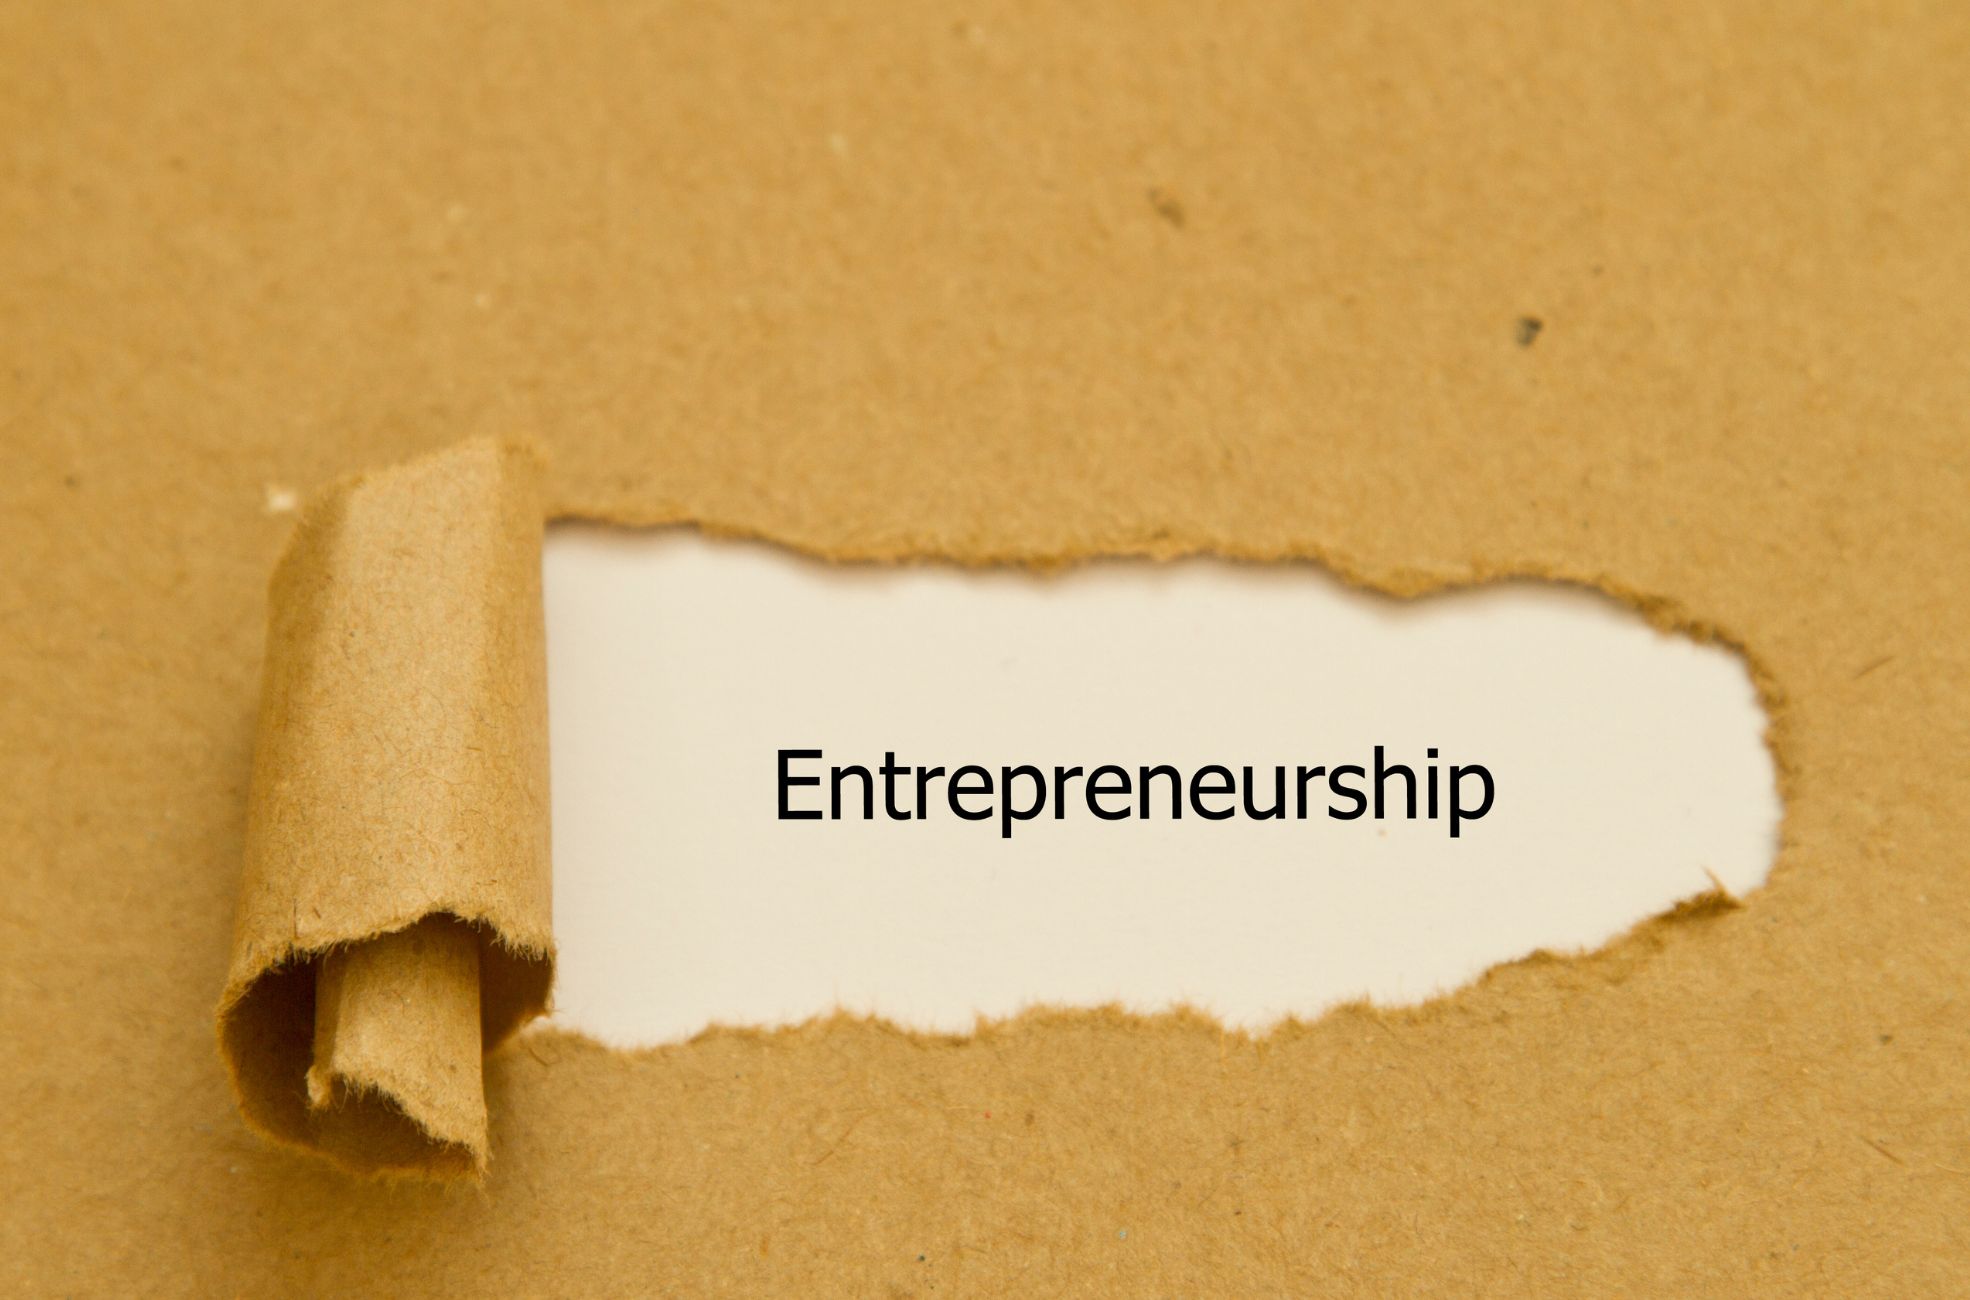 Paper Saying "Entrepreneurship"